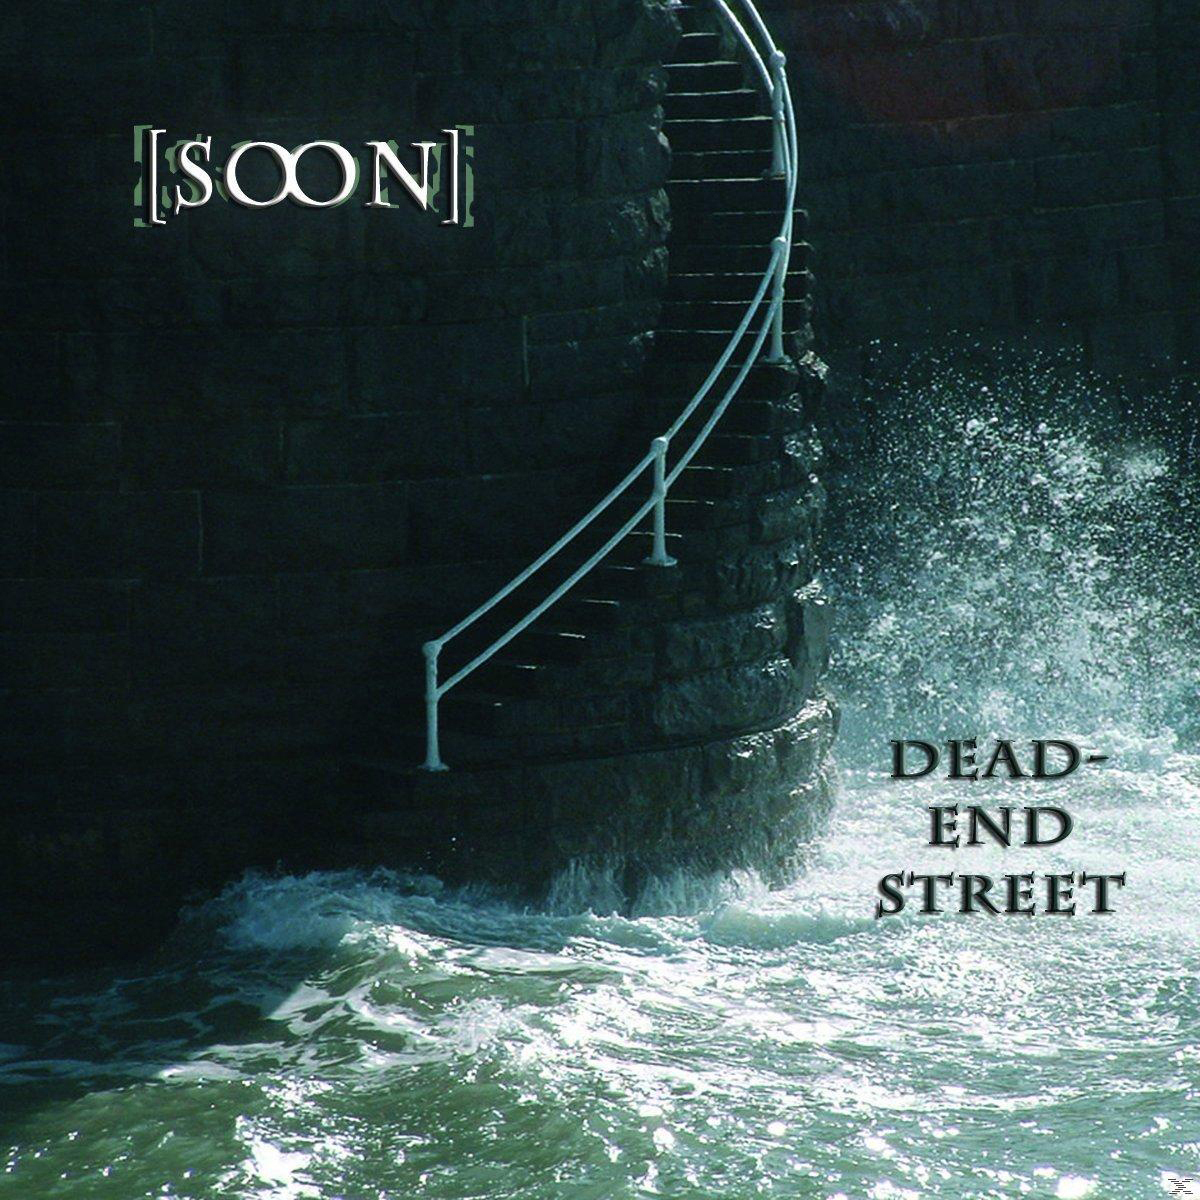 Dead-End - [soon] - Street (CD)